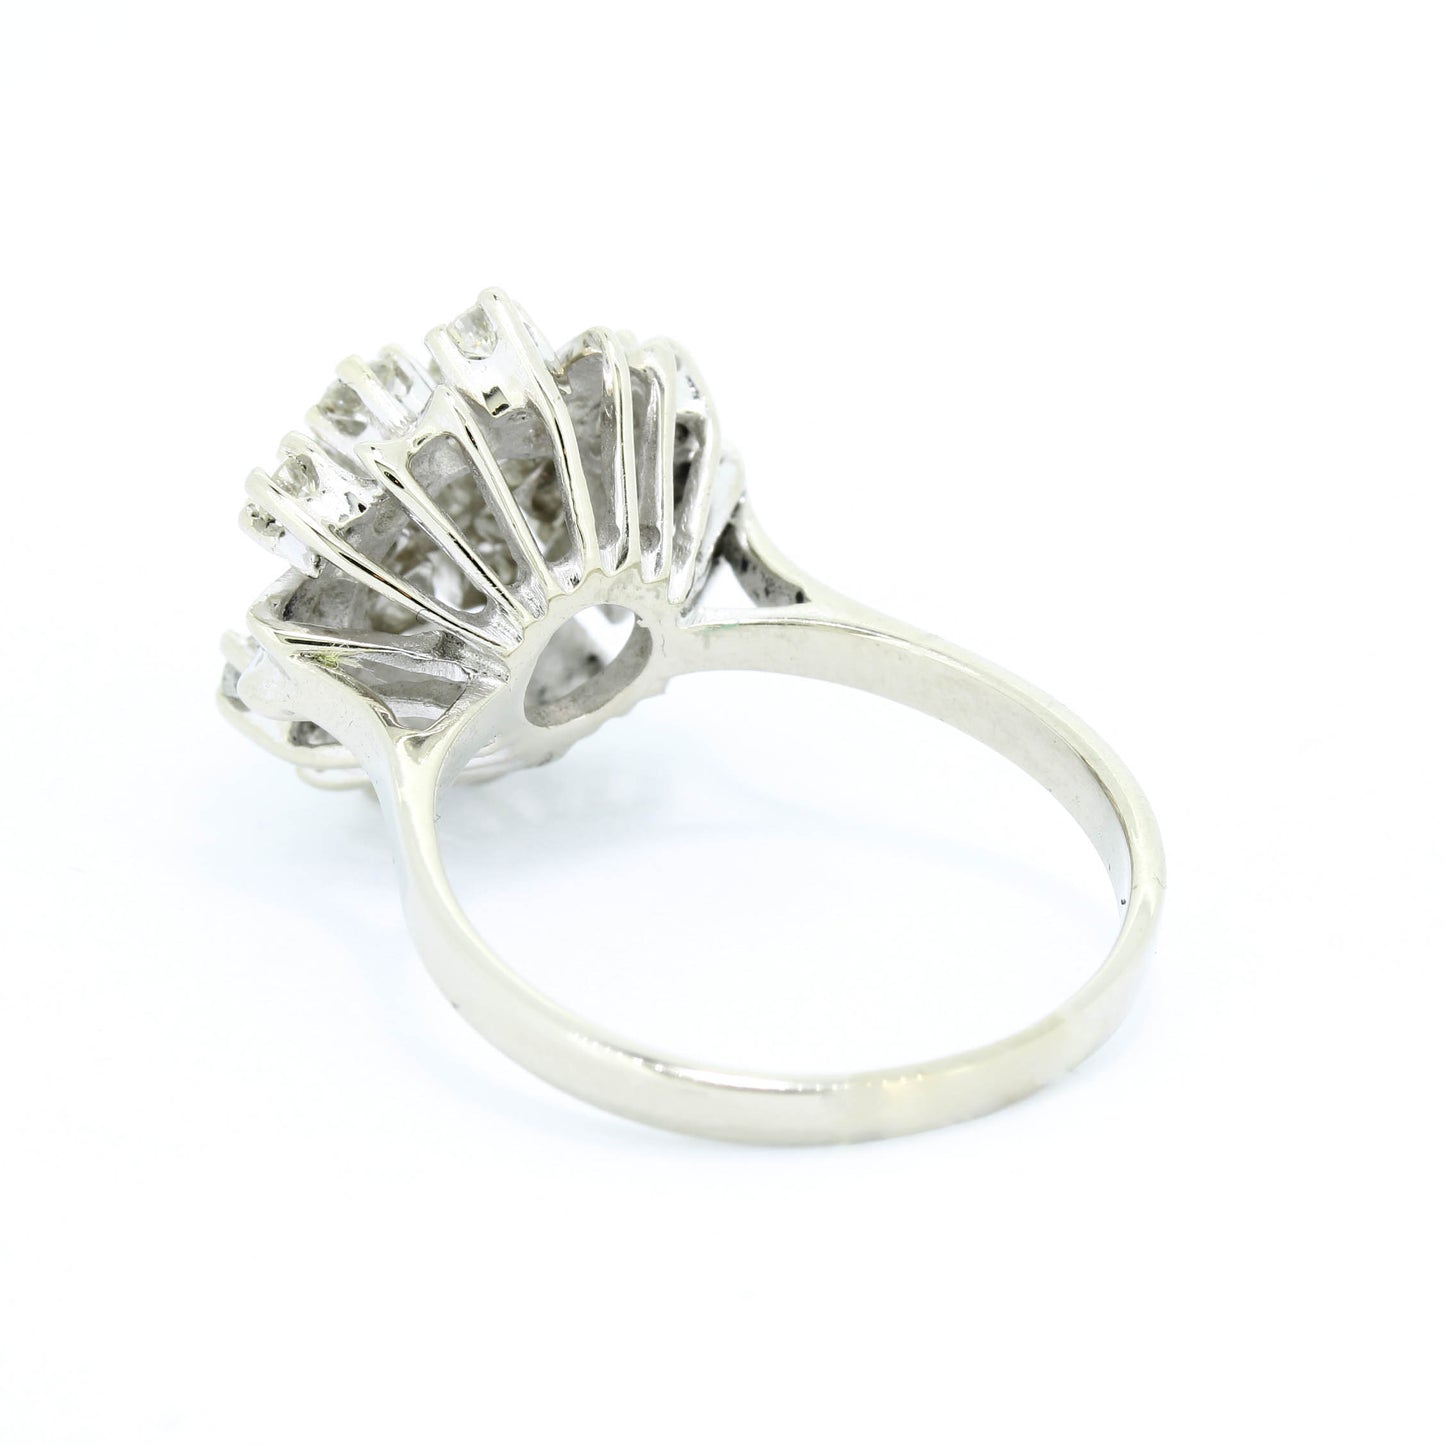 Brillant Ring 585 Gold 14 Kt Diamanten 0,85 ct H/SI Wert 1400,-